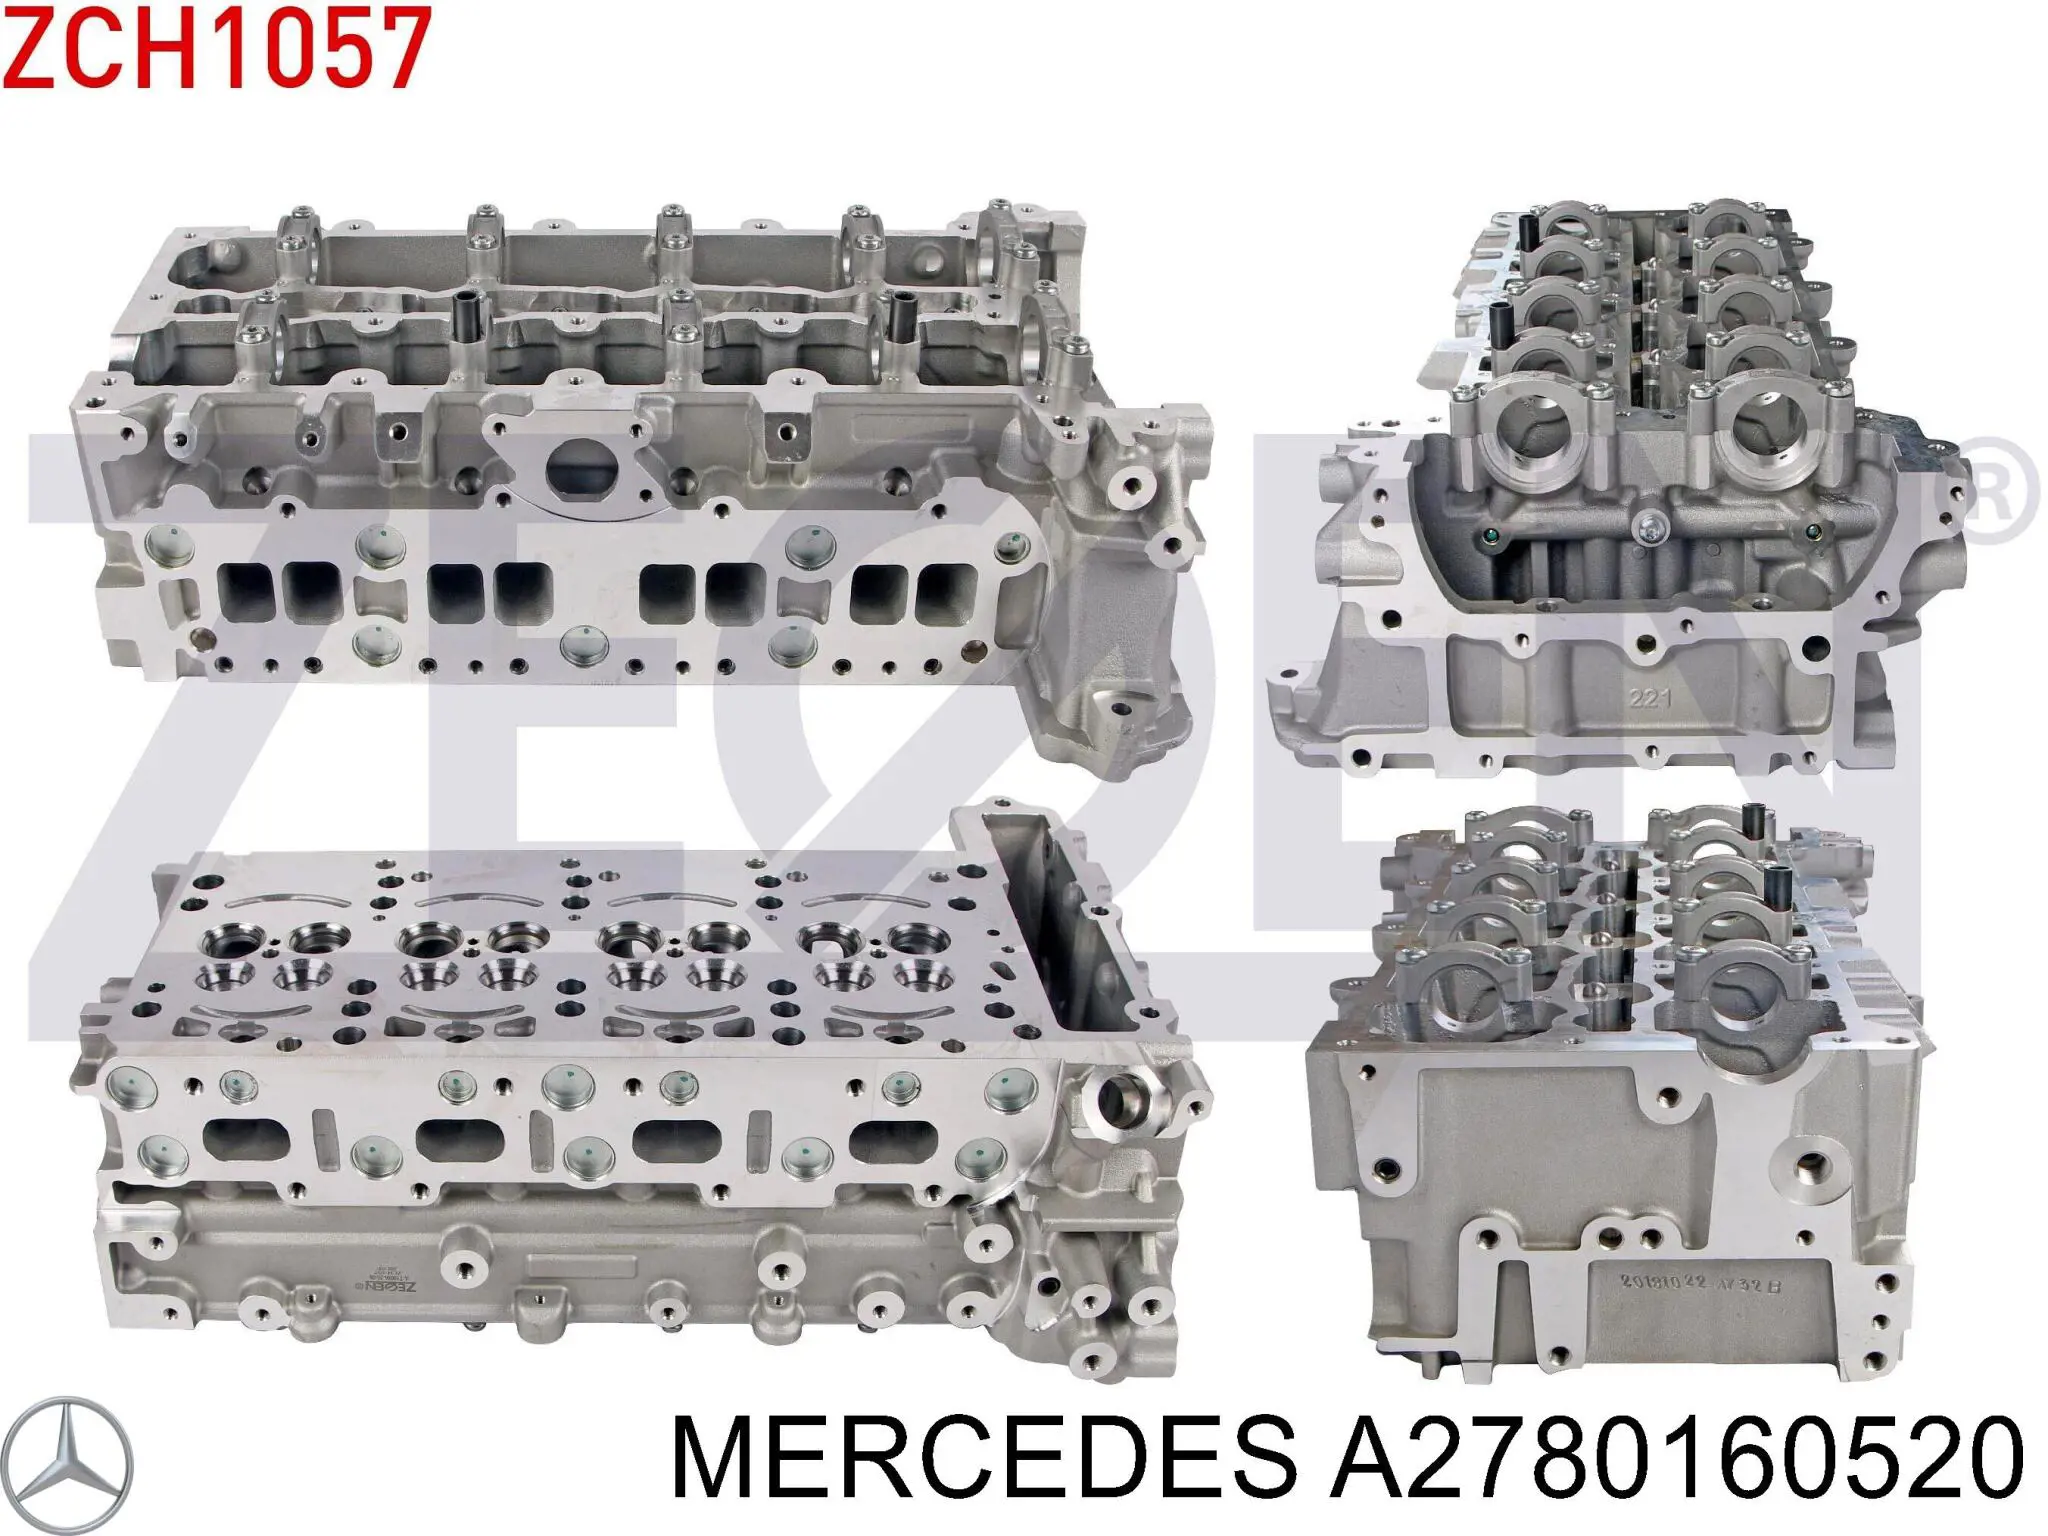 Прокладка головки блока цилиндров (ГБЦ), правая на Mercedes S (A217)